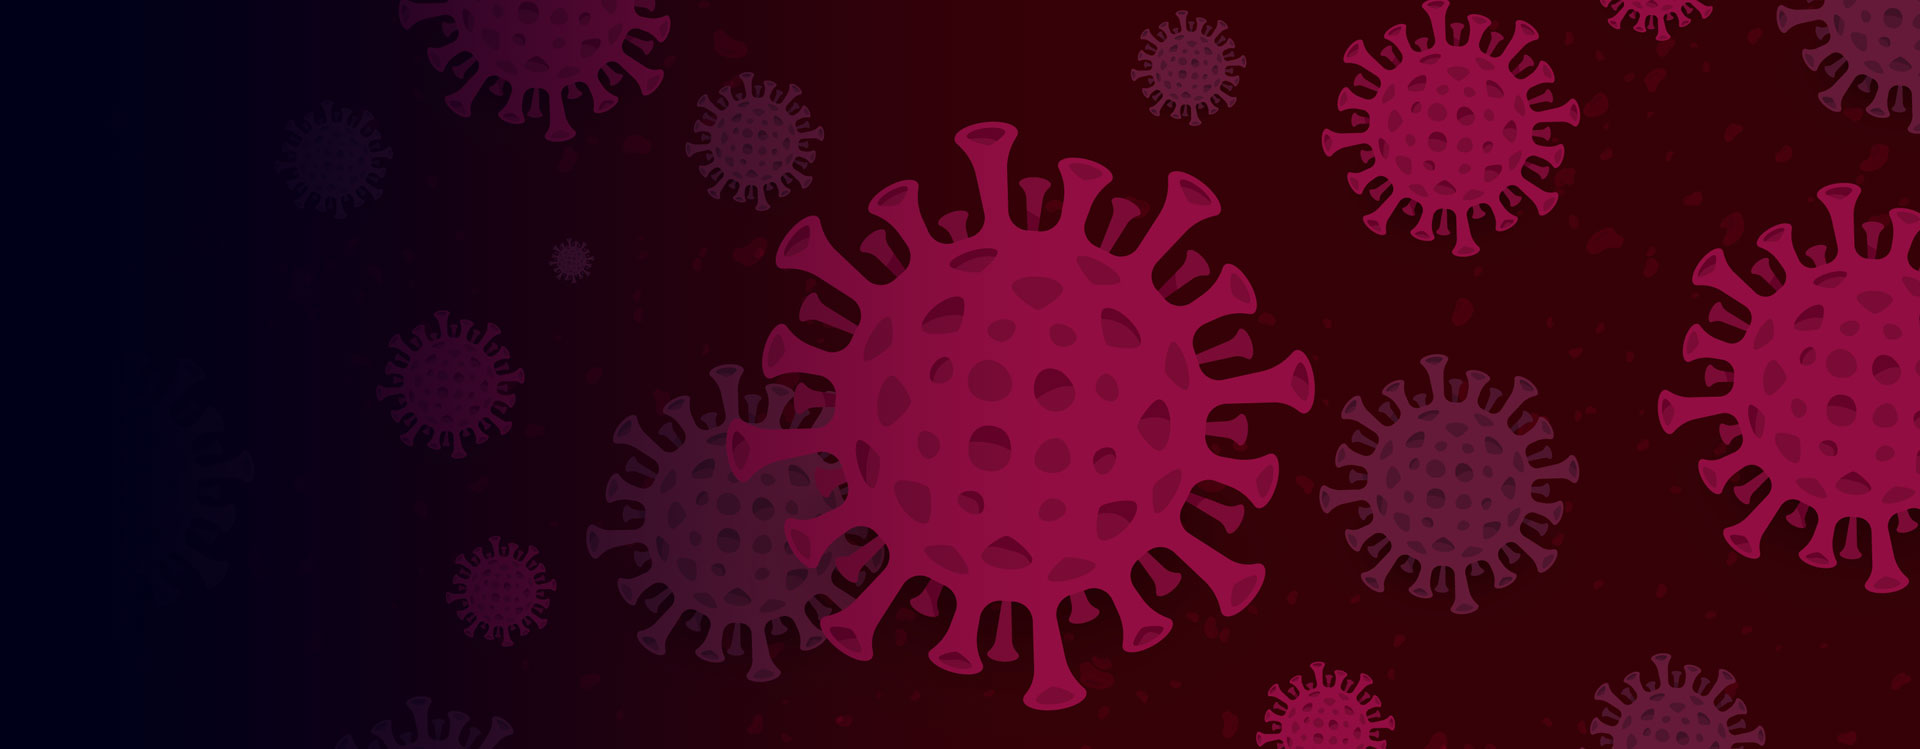 Coronavirus Update Slider